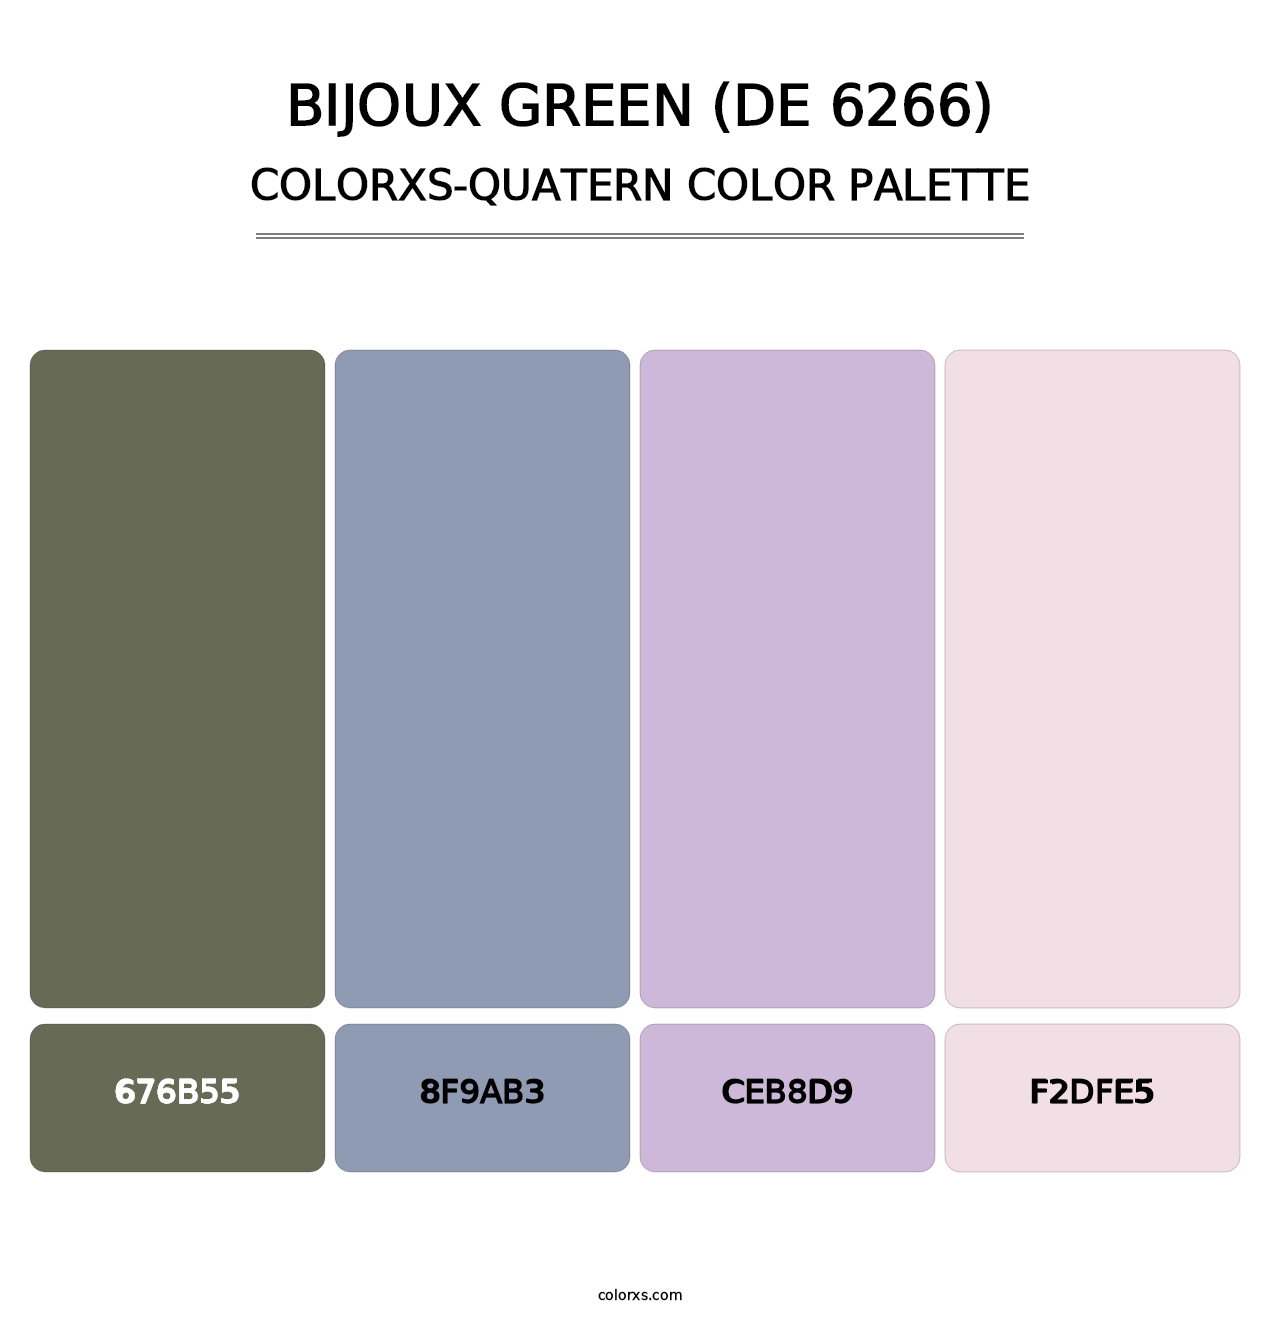 Bijoux Green (DE 6266) - Colorxs Quatern Palette